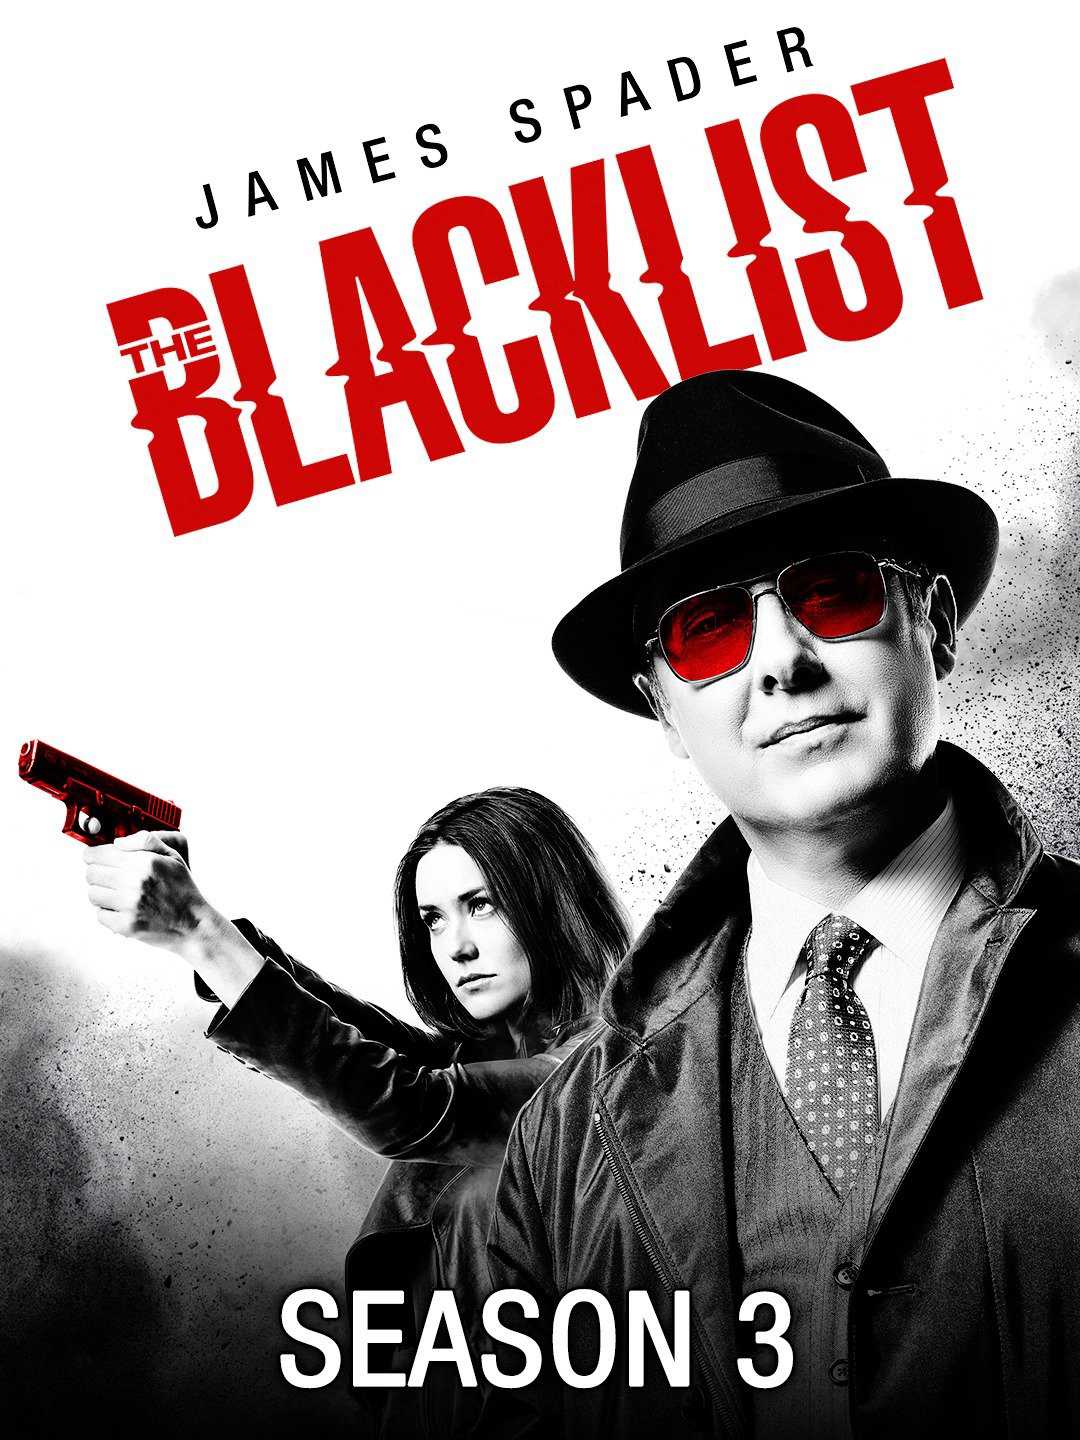 Danh sách đen (phần 3) - The blacklist (season 3)